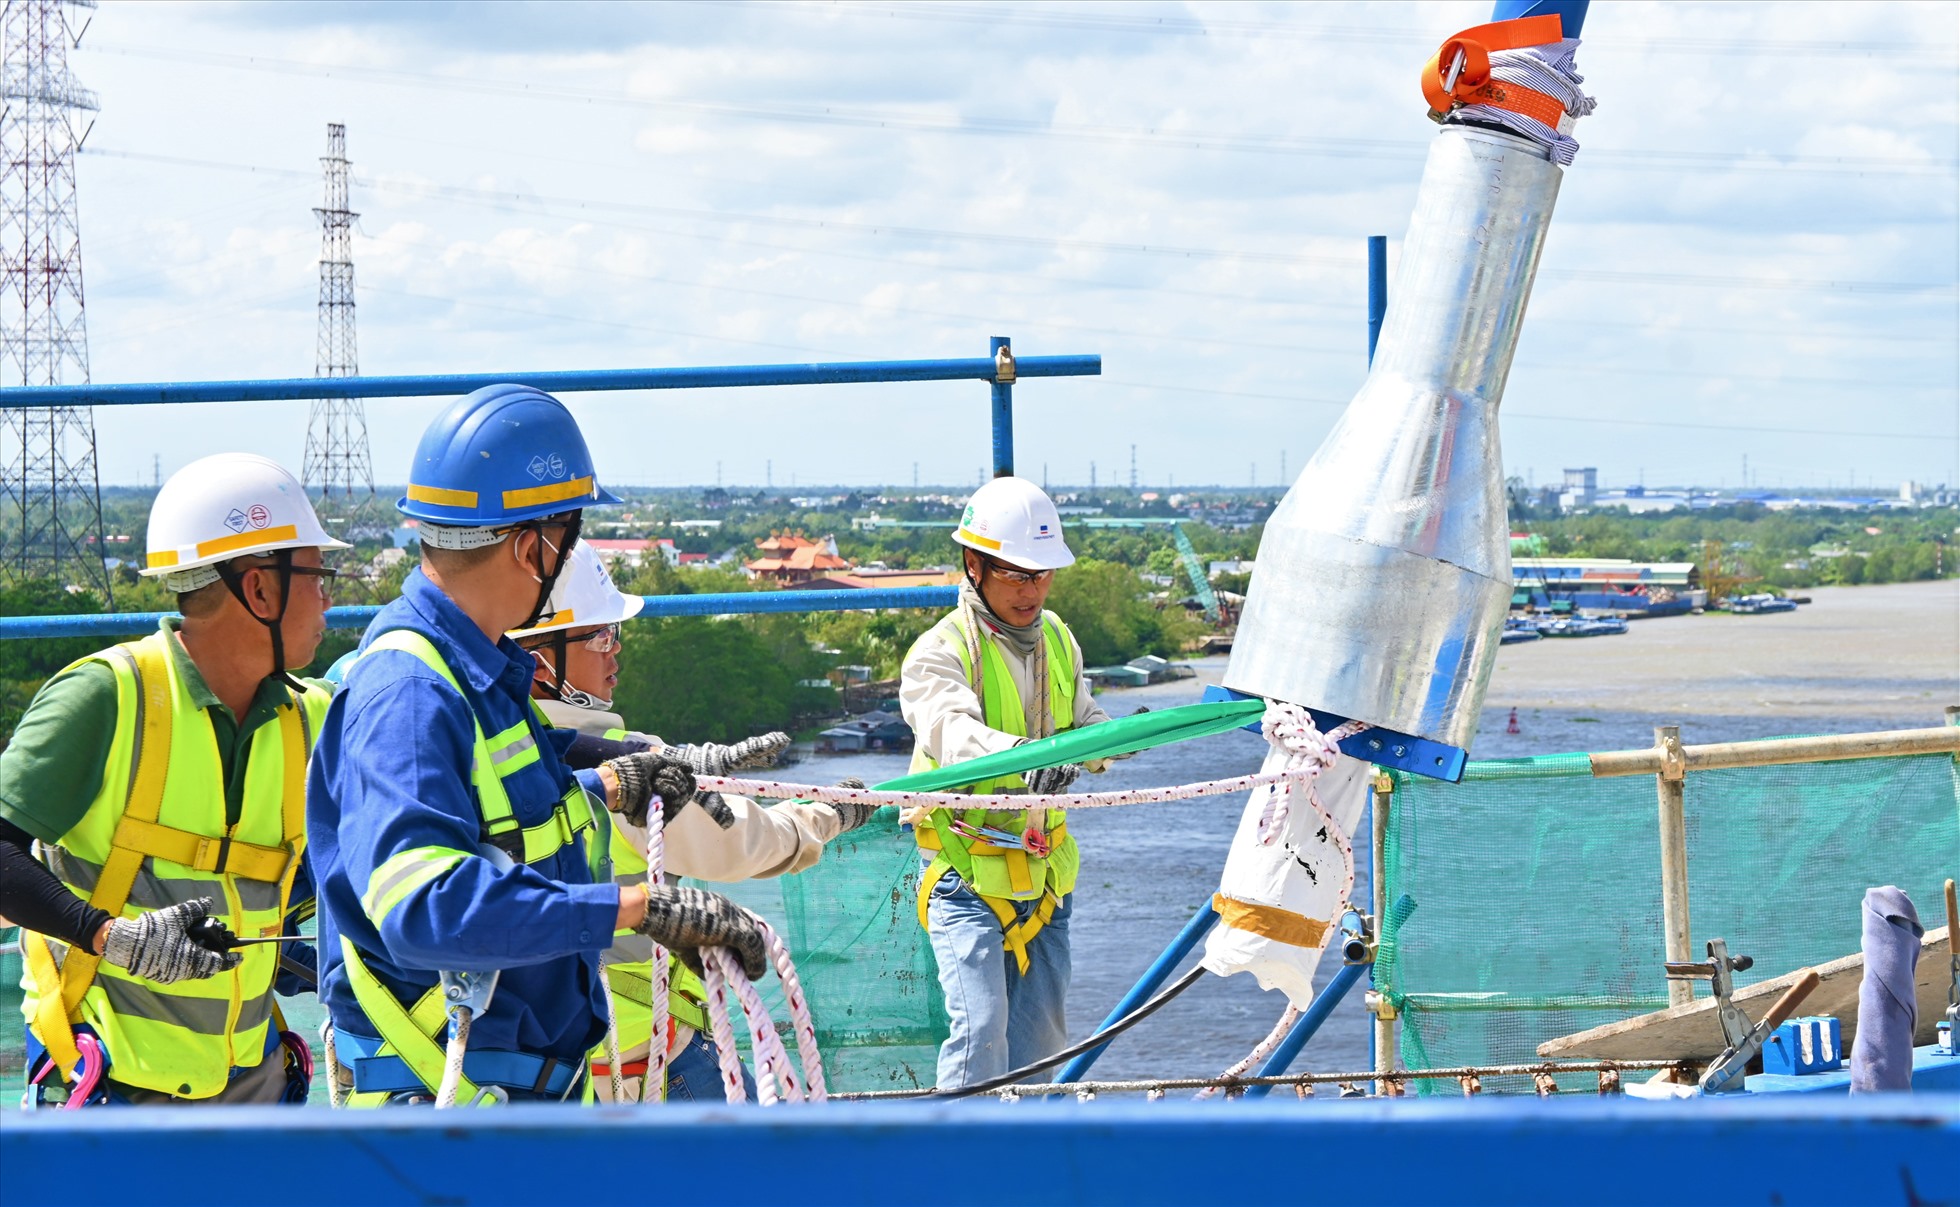 Công nhân thi công căng dây cáp đầu tiên tại tháp trụ T16 dự án công trình cầu Mỹ Thuận 2. Ảnh: Thành Nhân.